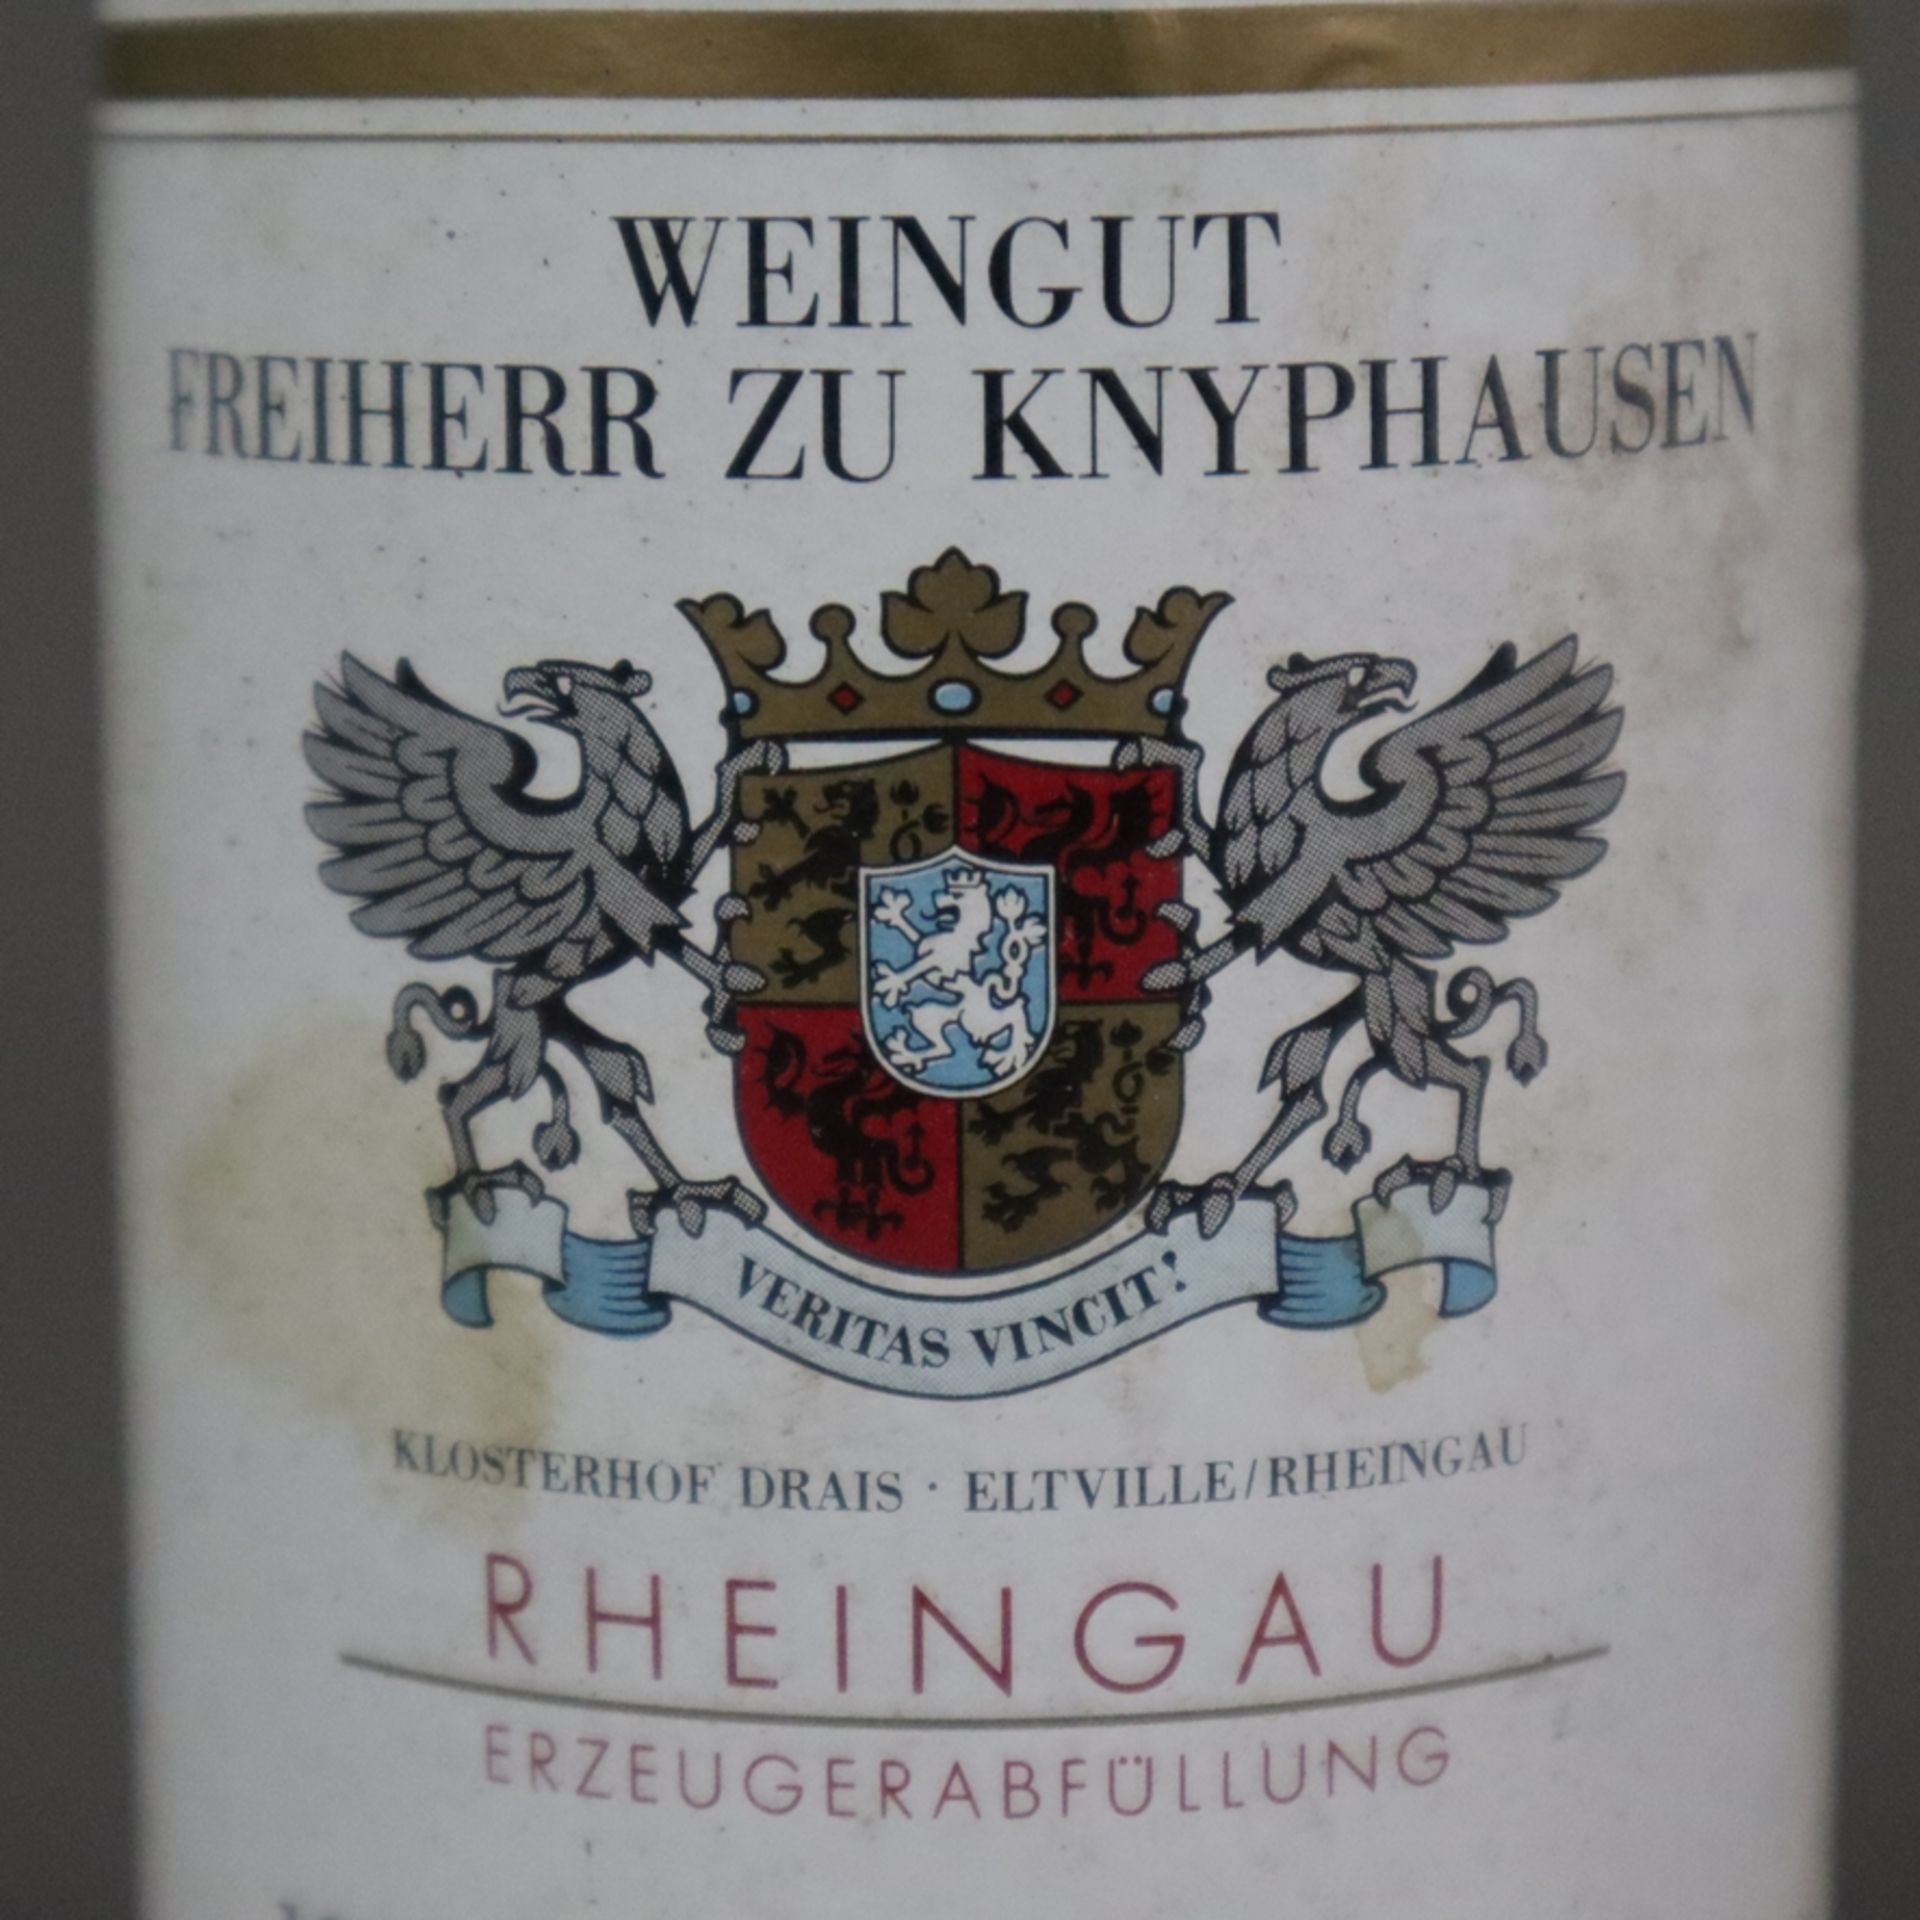 Wein - 3 Flaschen 1989 Erbach Steinmorgen Riesling Beerenauslese, Weingut Freiherr zu Knyphausen, 5 - Bild 5 aus 7